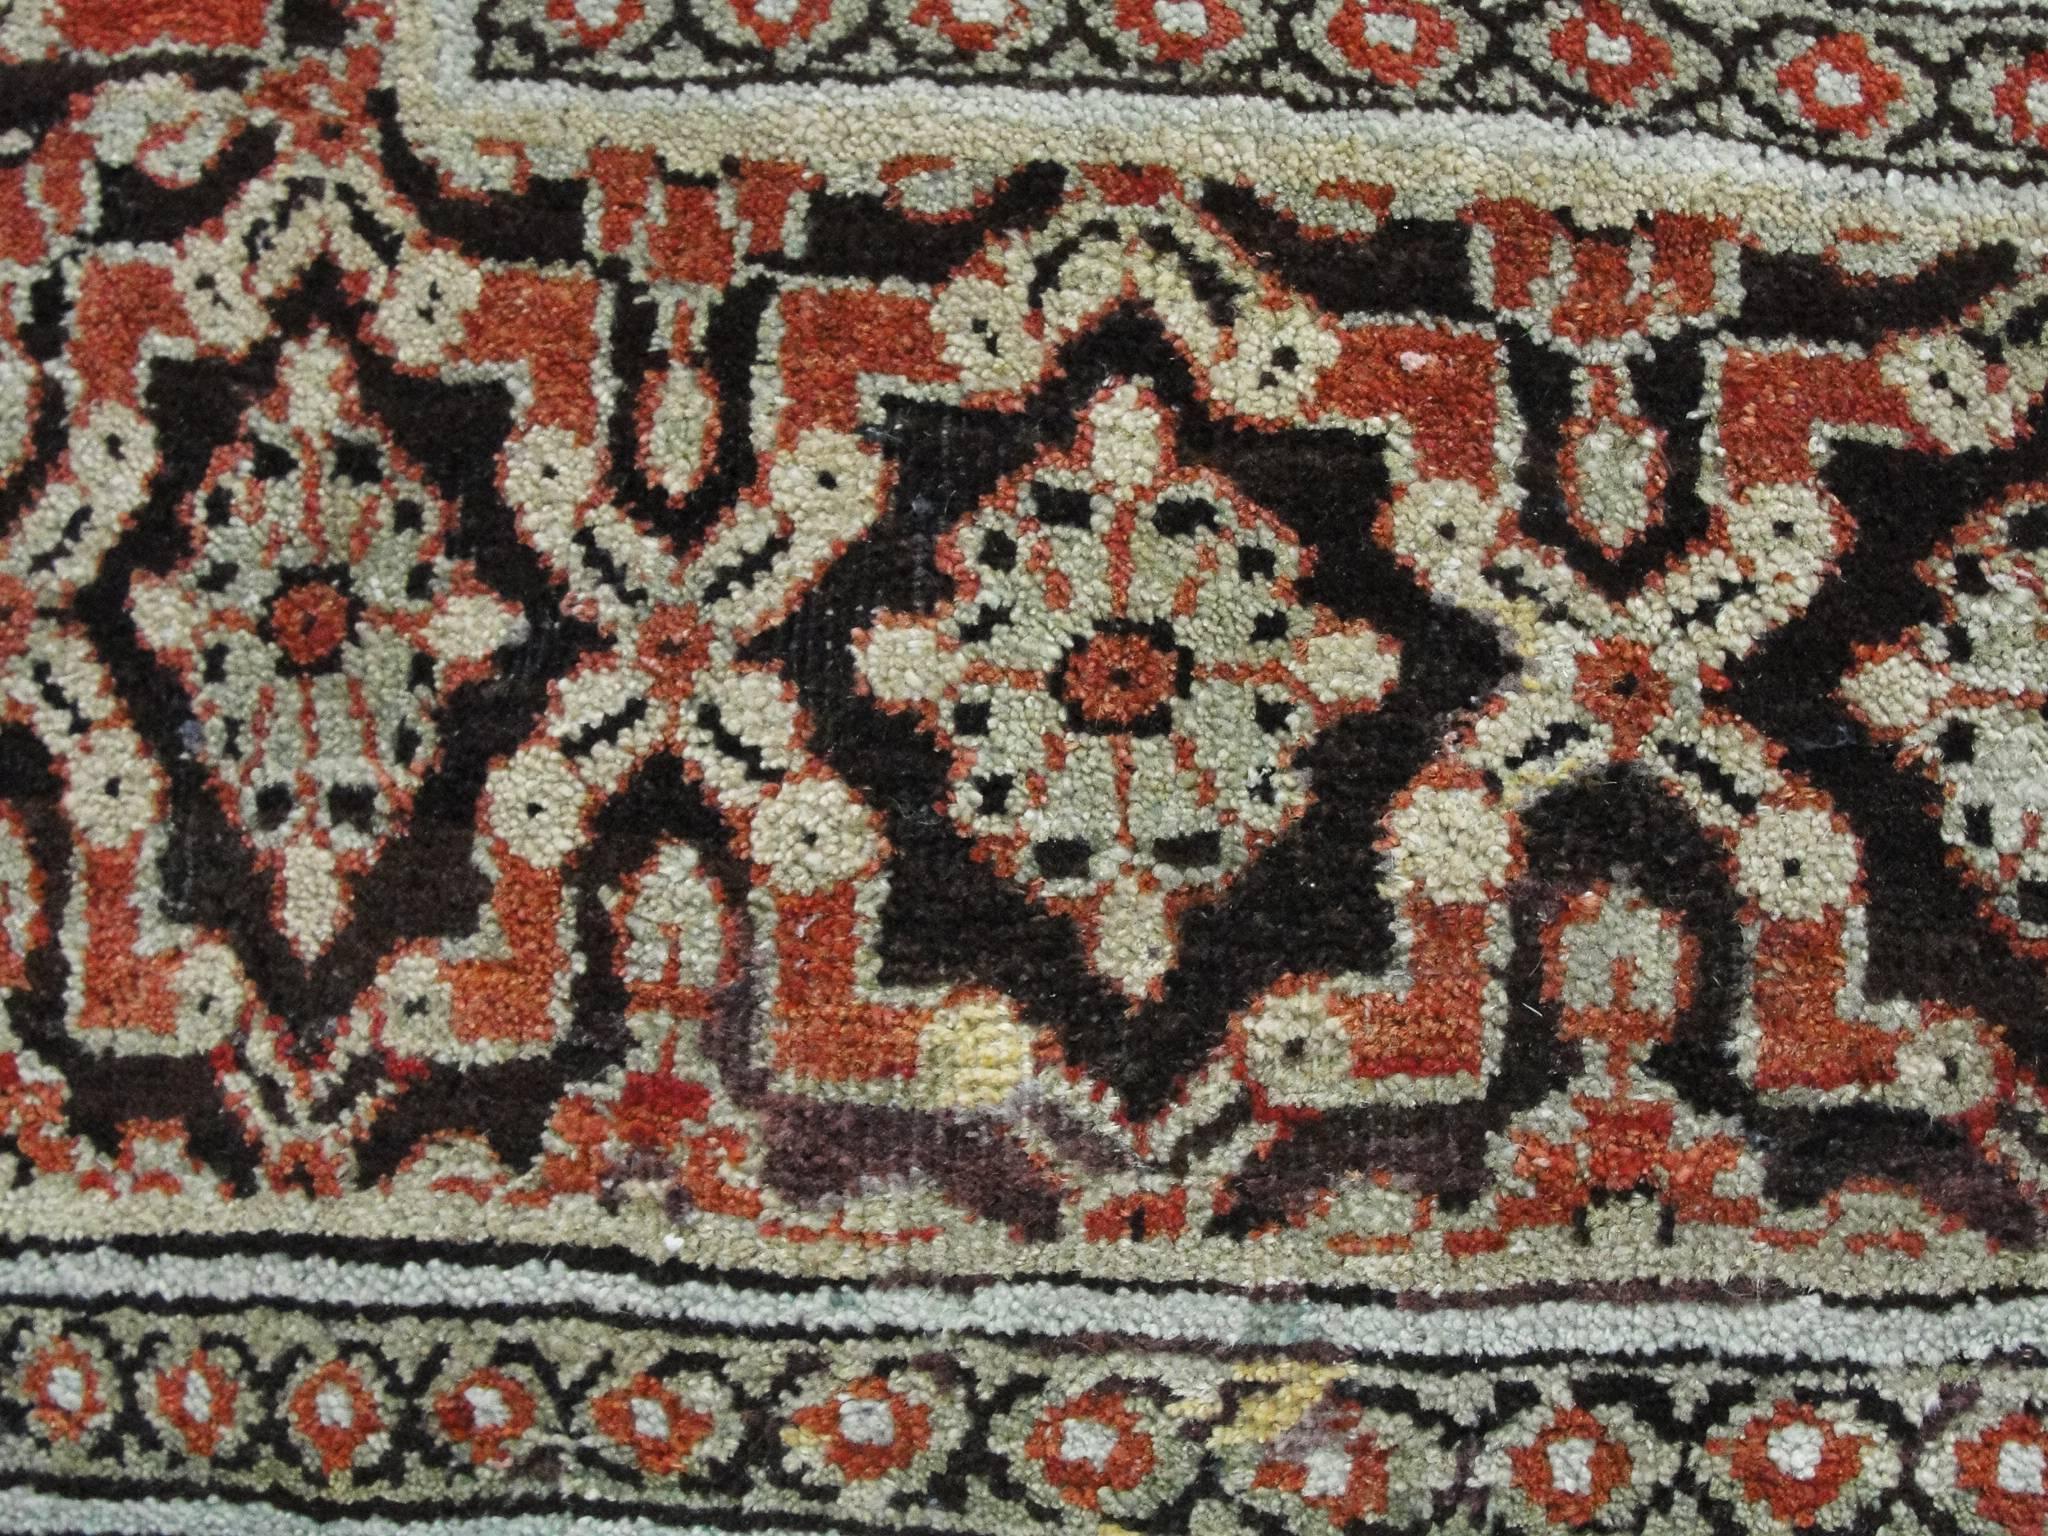 19th Century Antique Persian Sultanabad Carpet, 8' x 9'6